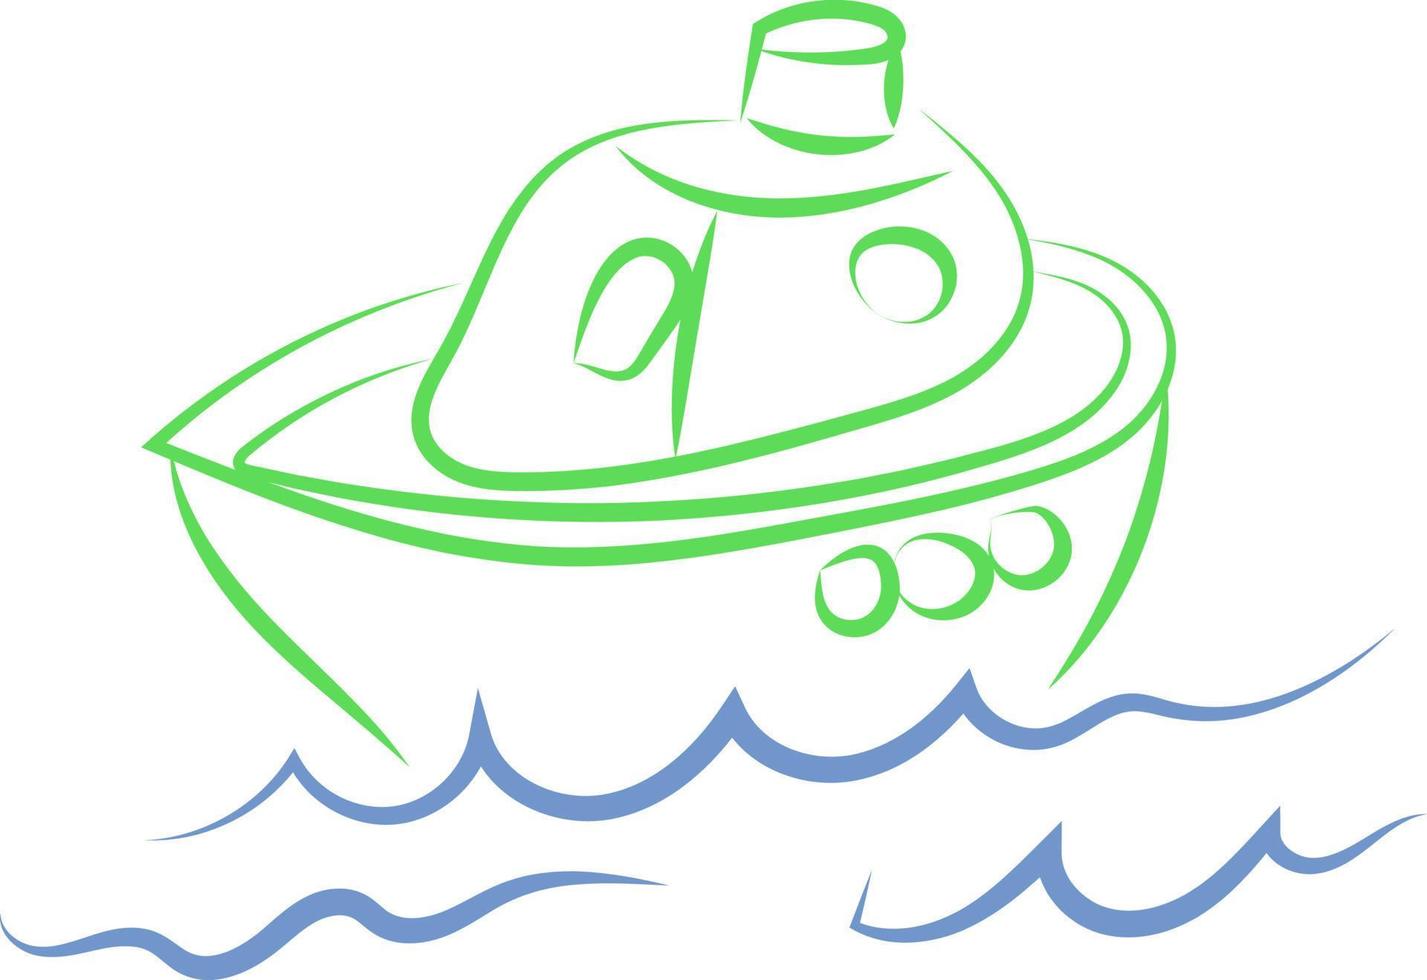 Dibujo de bote pequeño, ilustración, vector sobre fondo blanco.